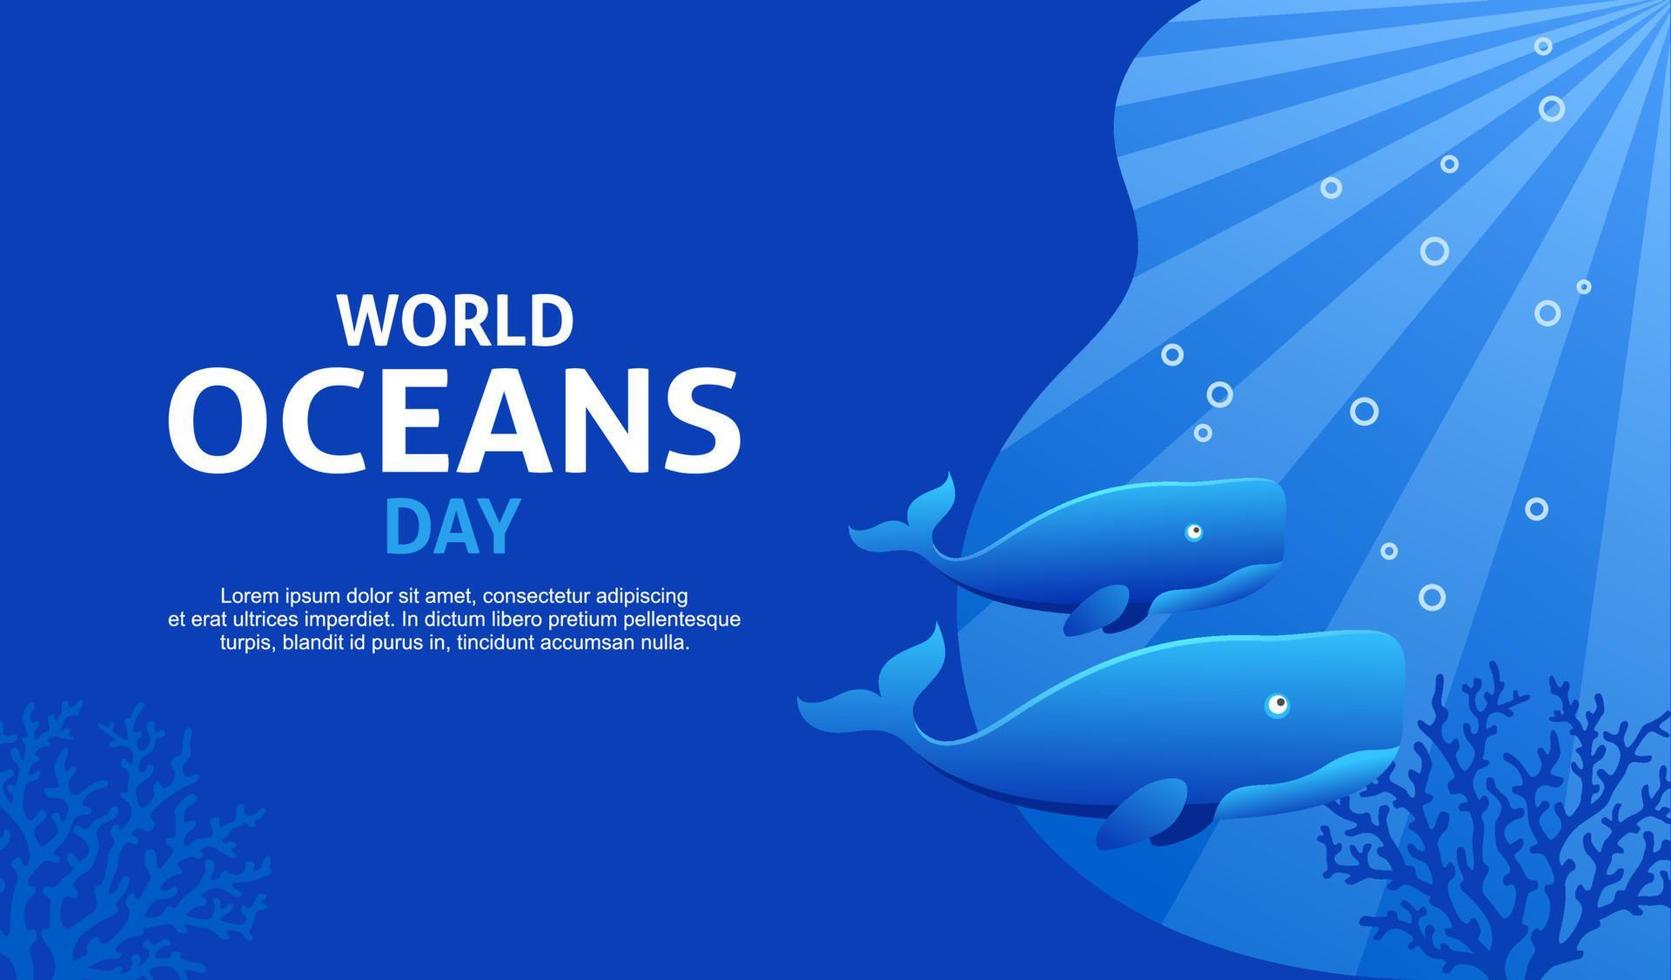 sfondo della giornata mondiale degli oceani con temi blu e balena vettore